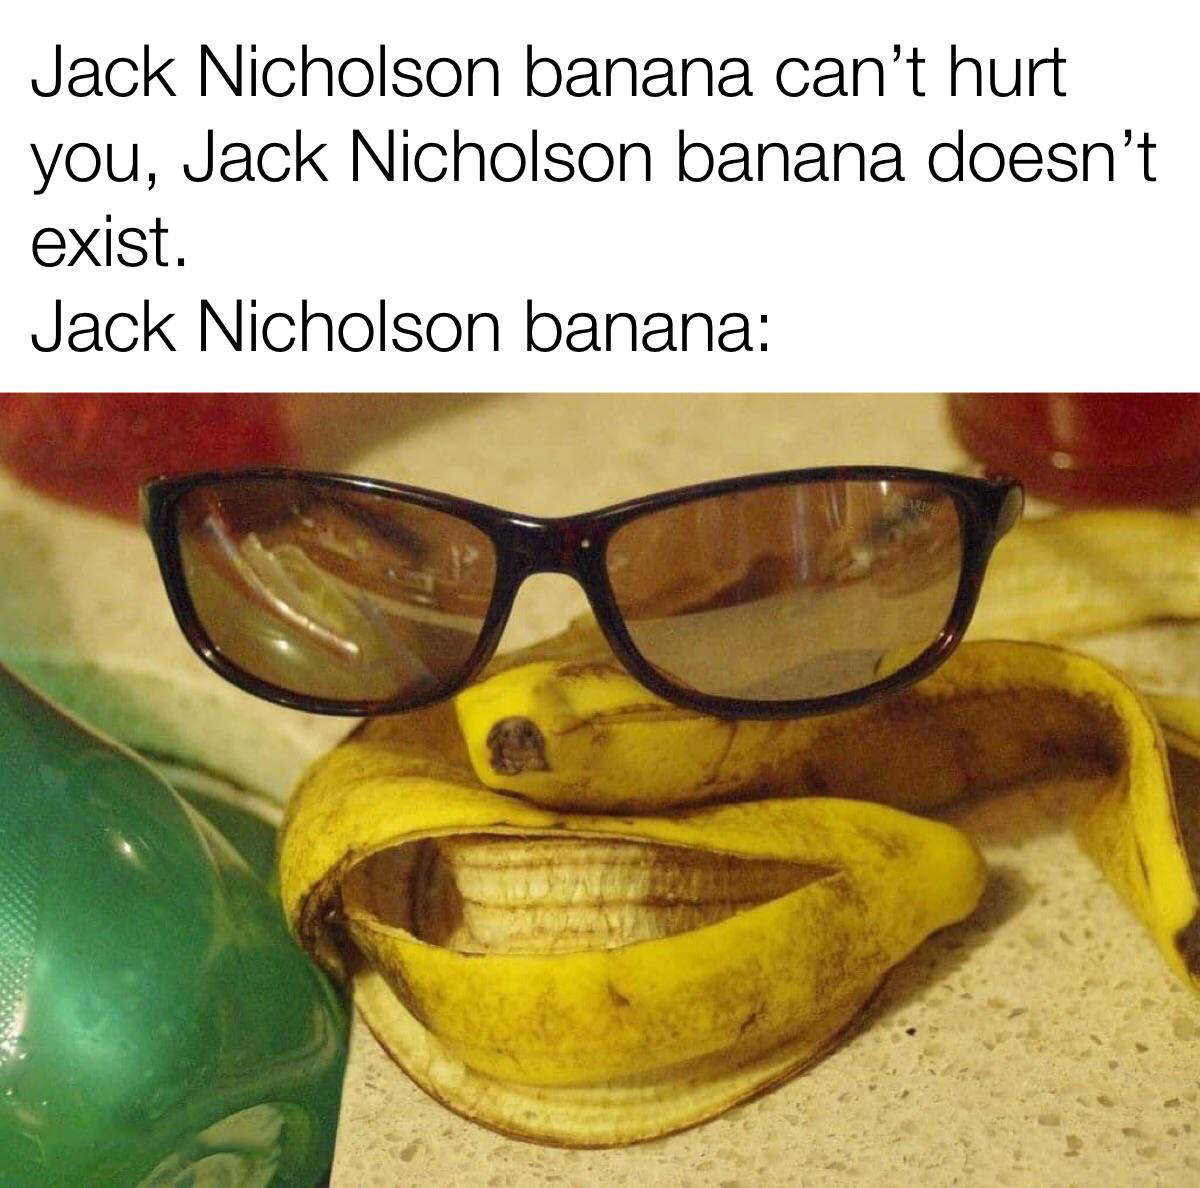 dank memes - jack nicholson banana - Jack Nicholson banana can't hurt you, Jack Nicholson banana doesn't exist. Jack Nicholson banana